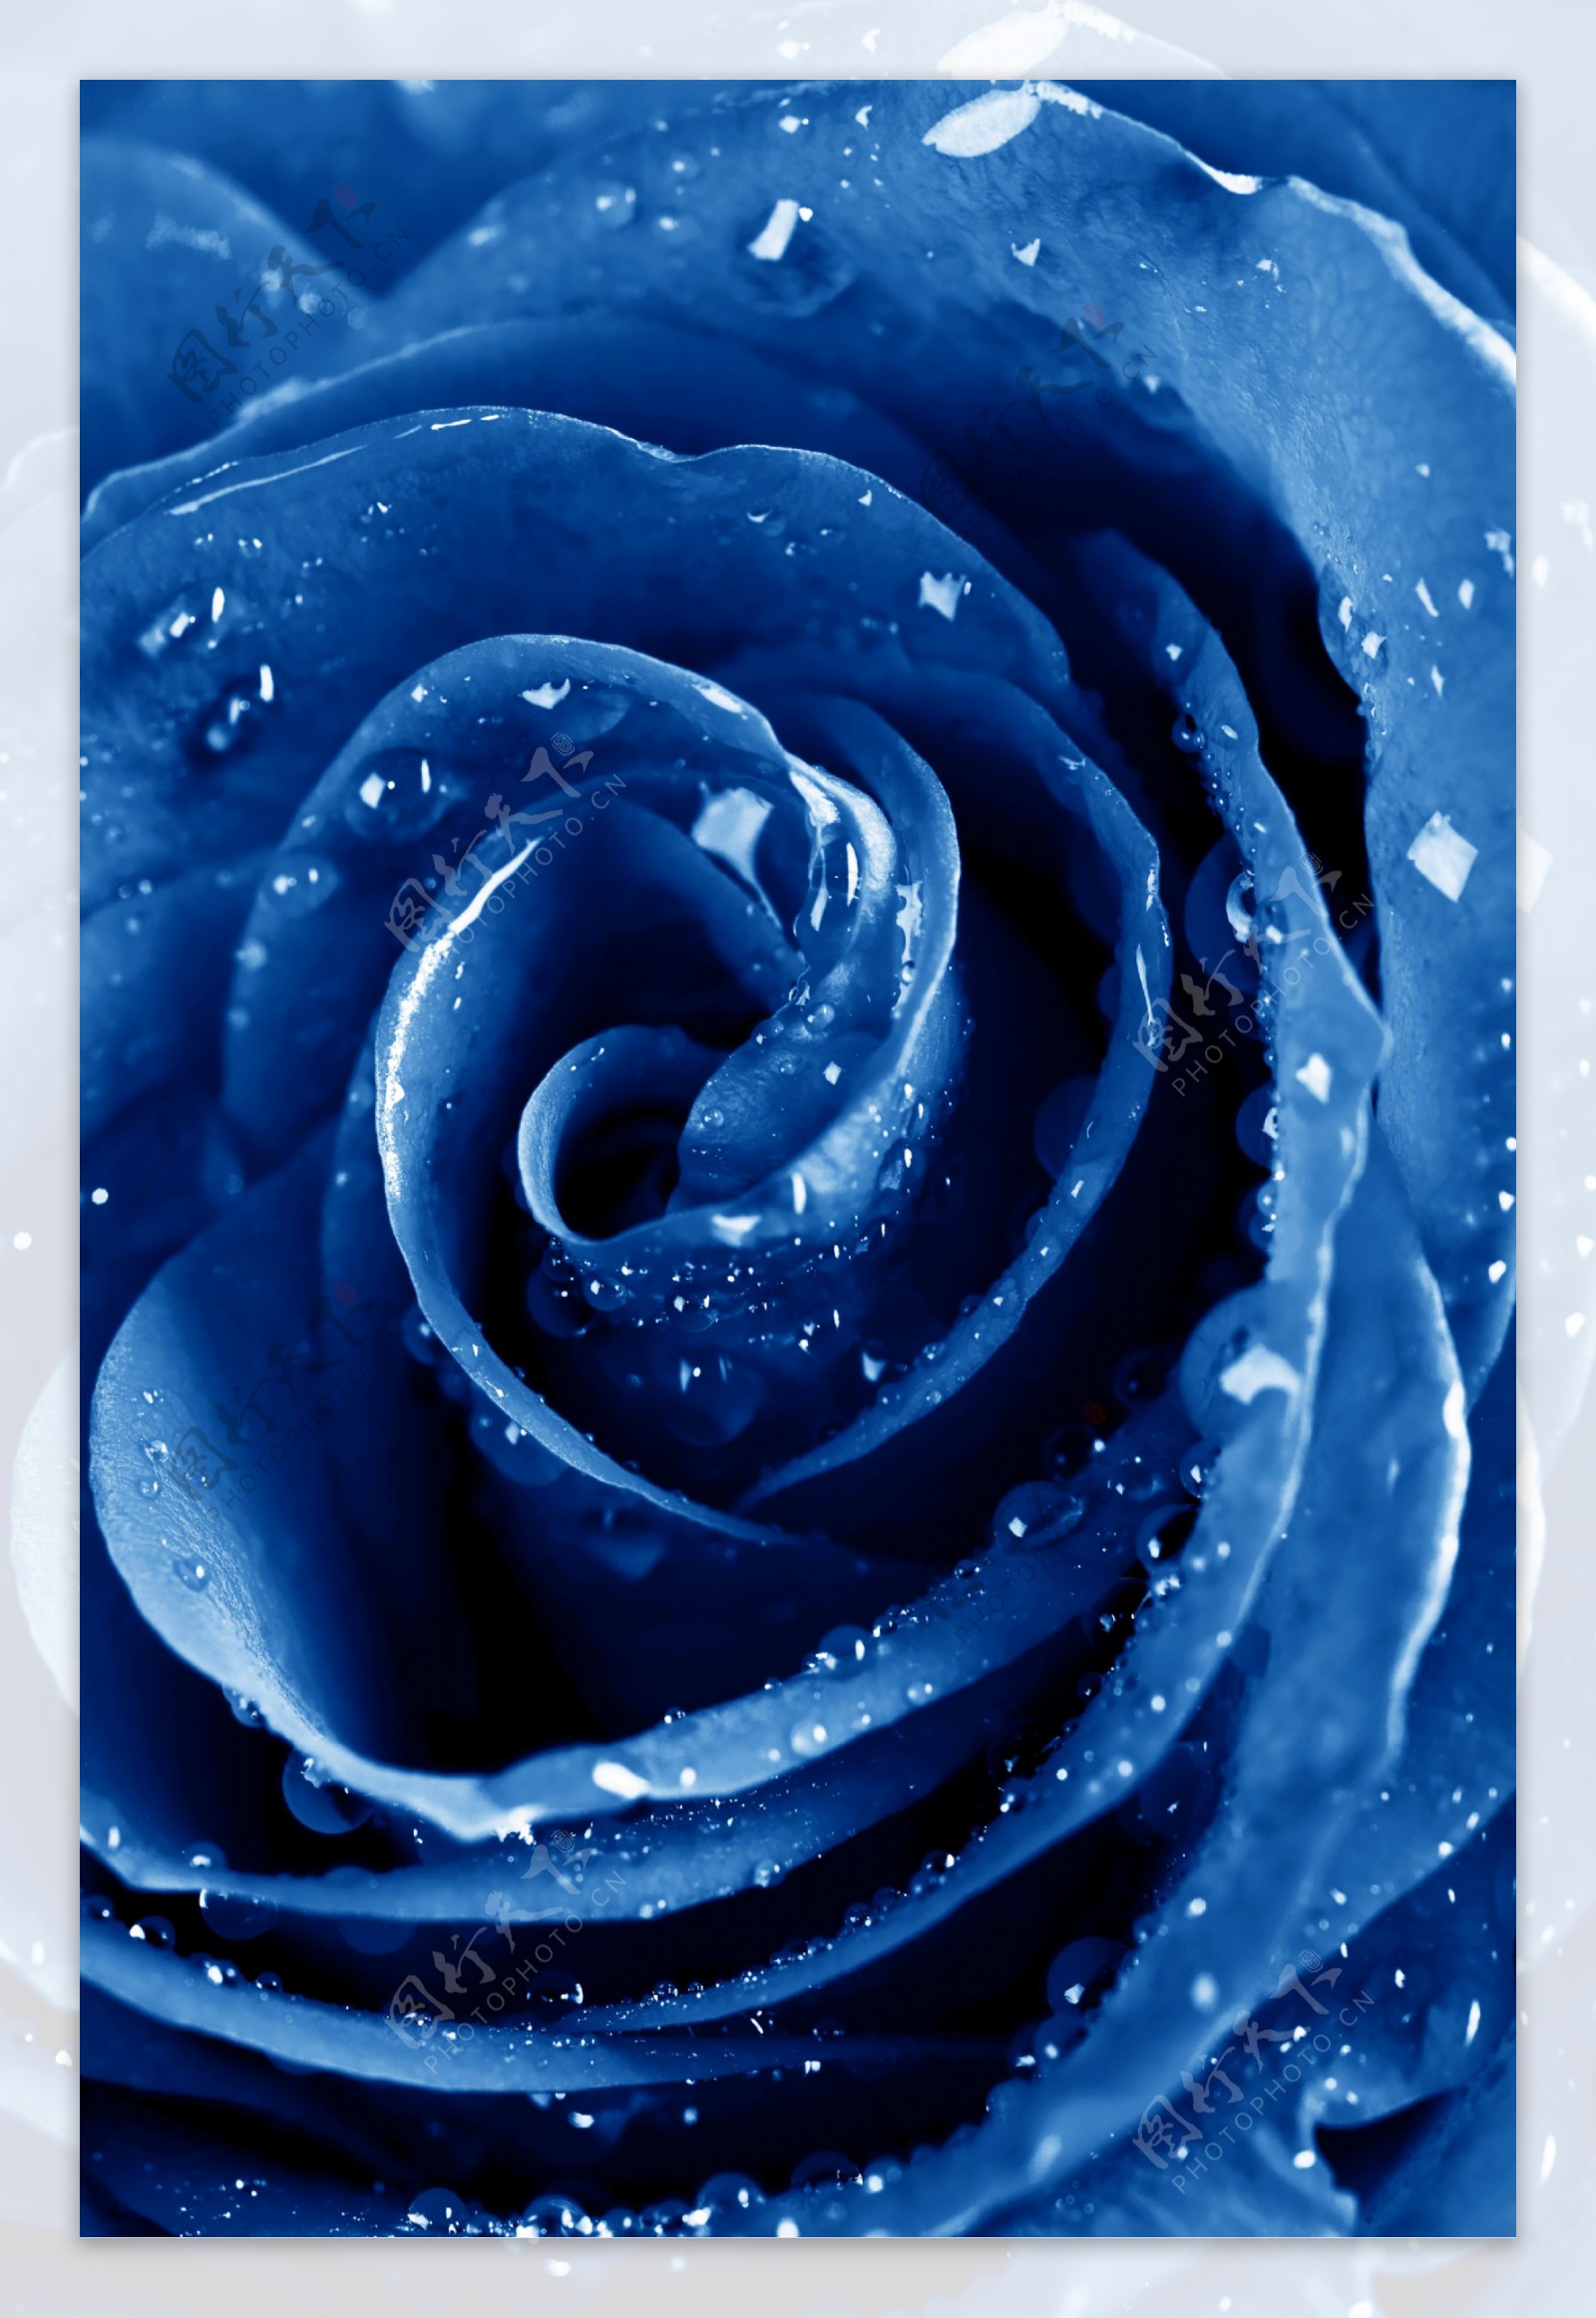 蓝色玫瑰花图片蓝色妖姬高清电脑壁纸-植物壁纸-壁纸下载-美桌网